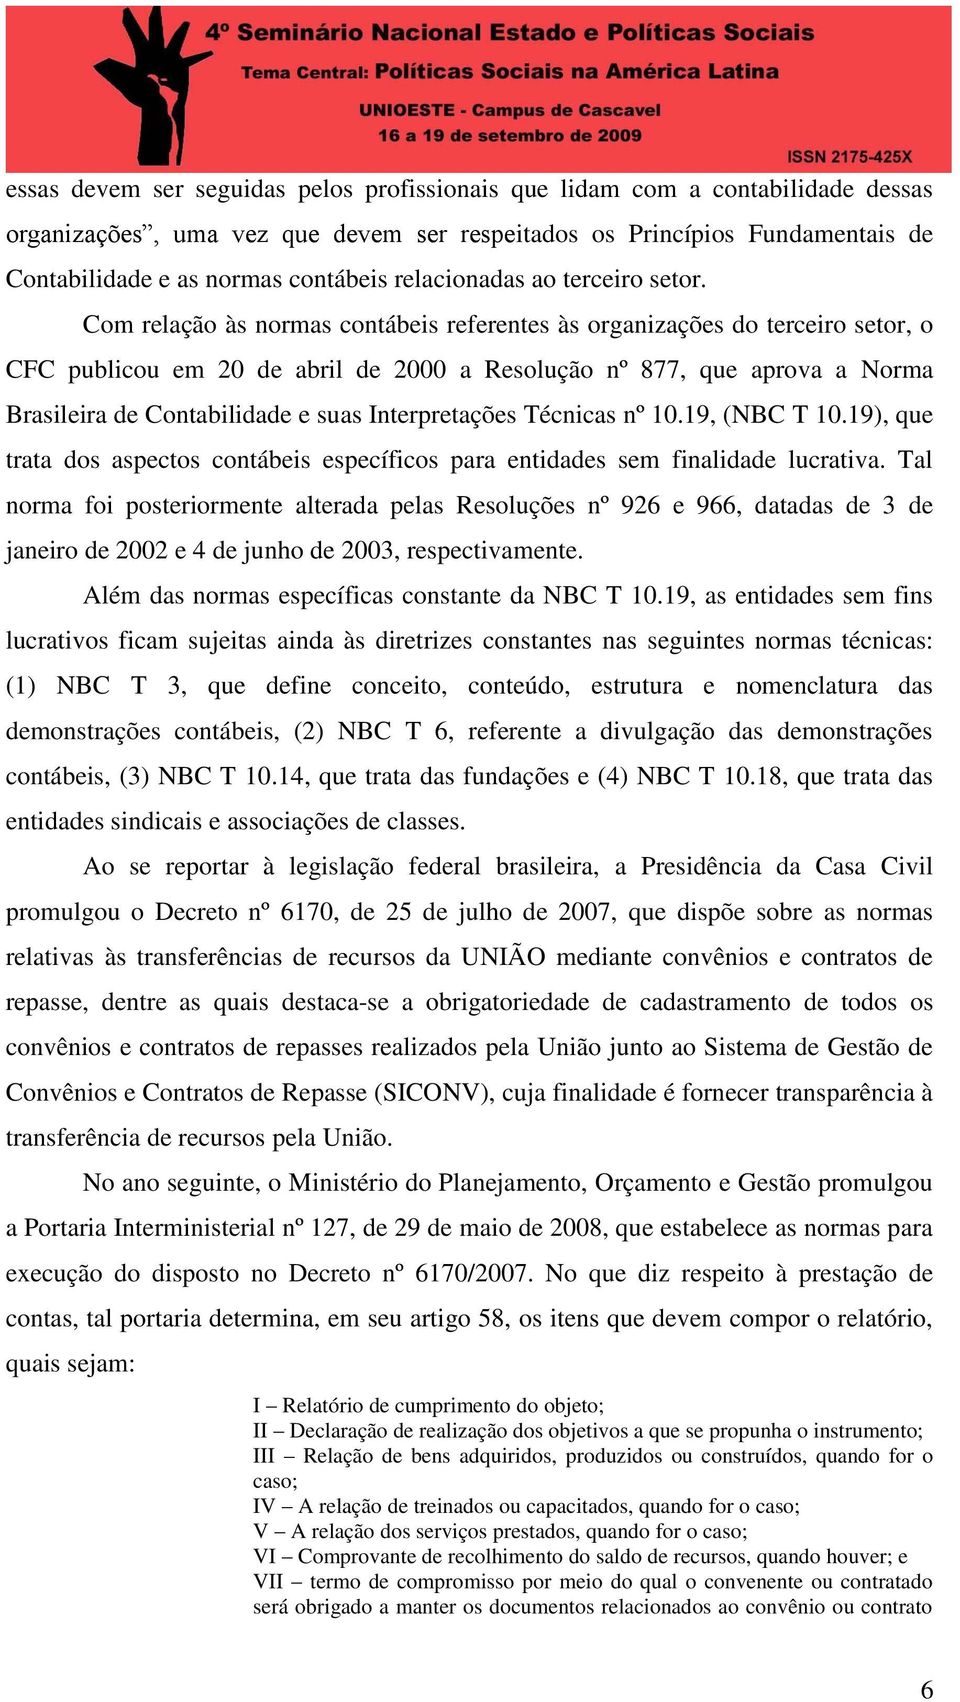 Com relação às normas contábeis referentes às organizações do terceiro setor, o CFC publicou em 20 de abril de 2000 a Resolução nº 877, que aprova a Norma Brasileira de Contabilidade e suas